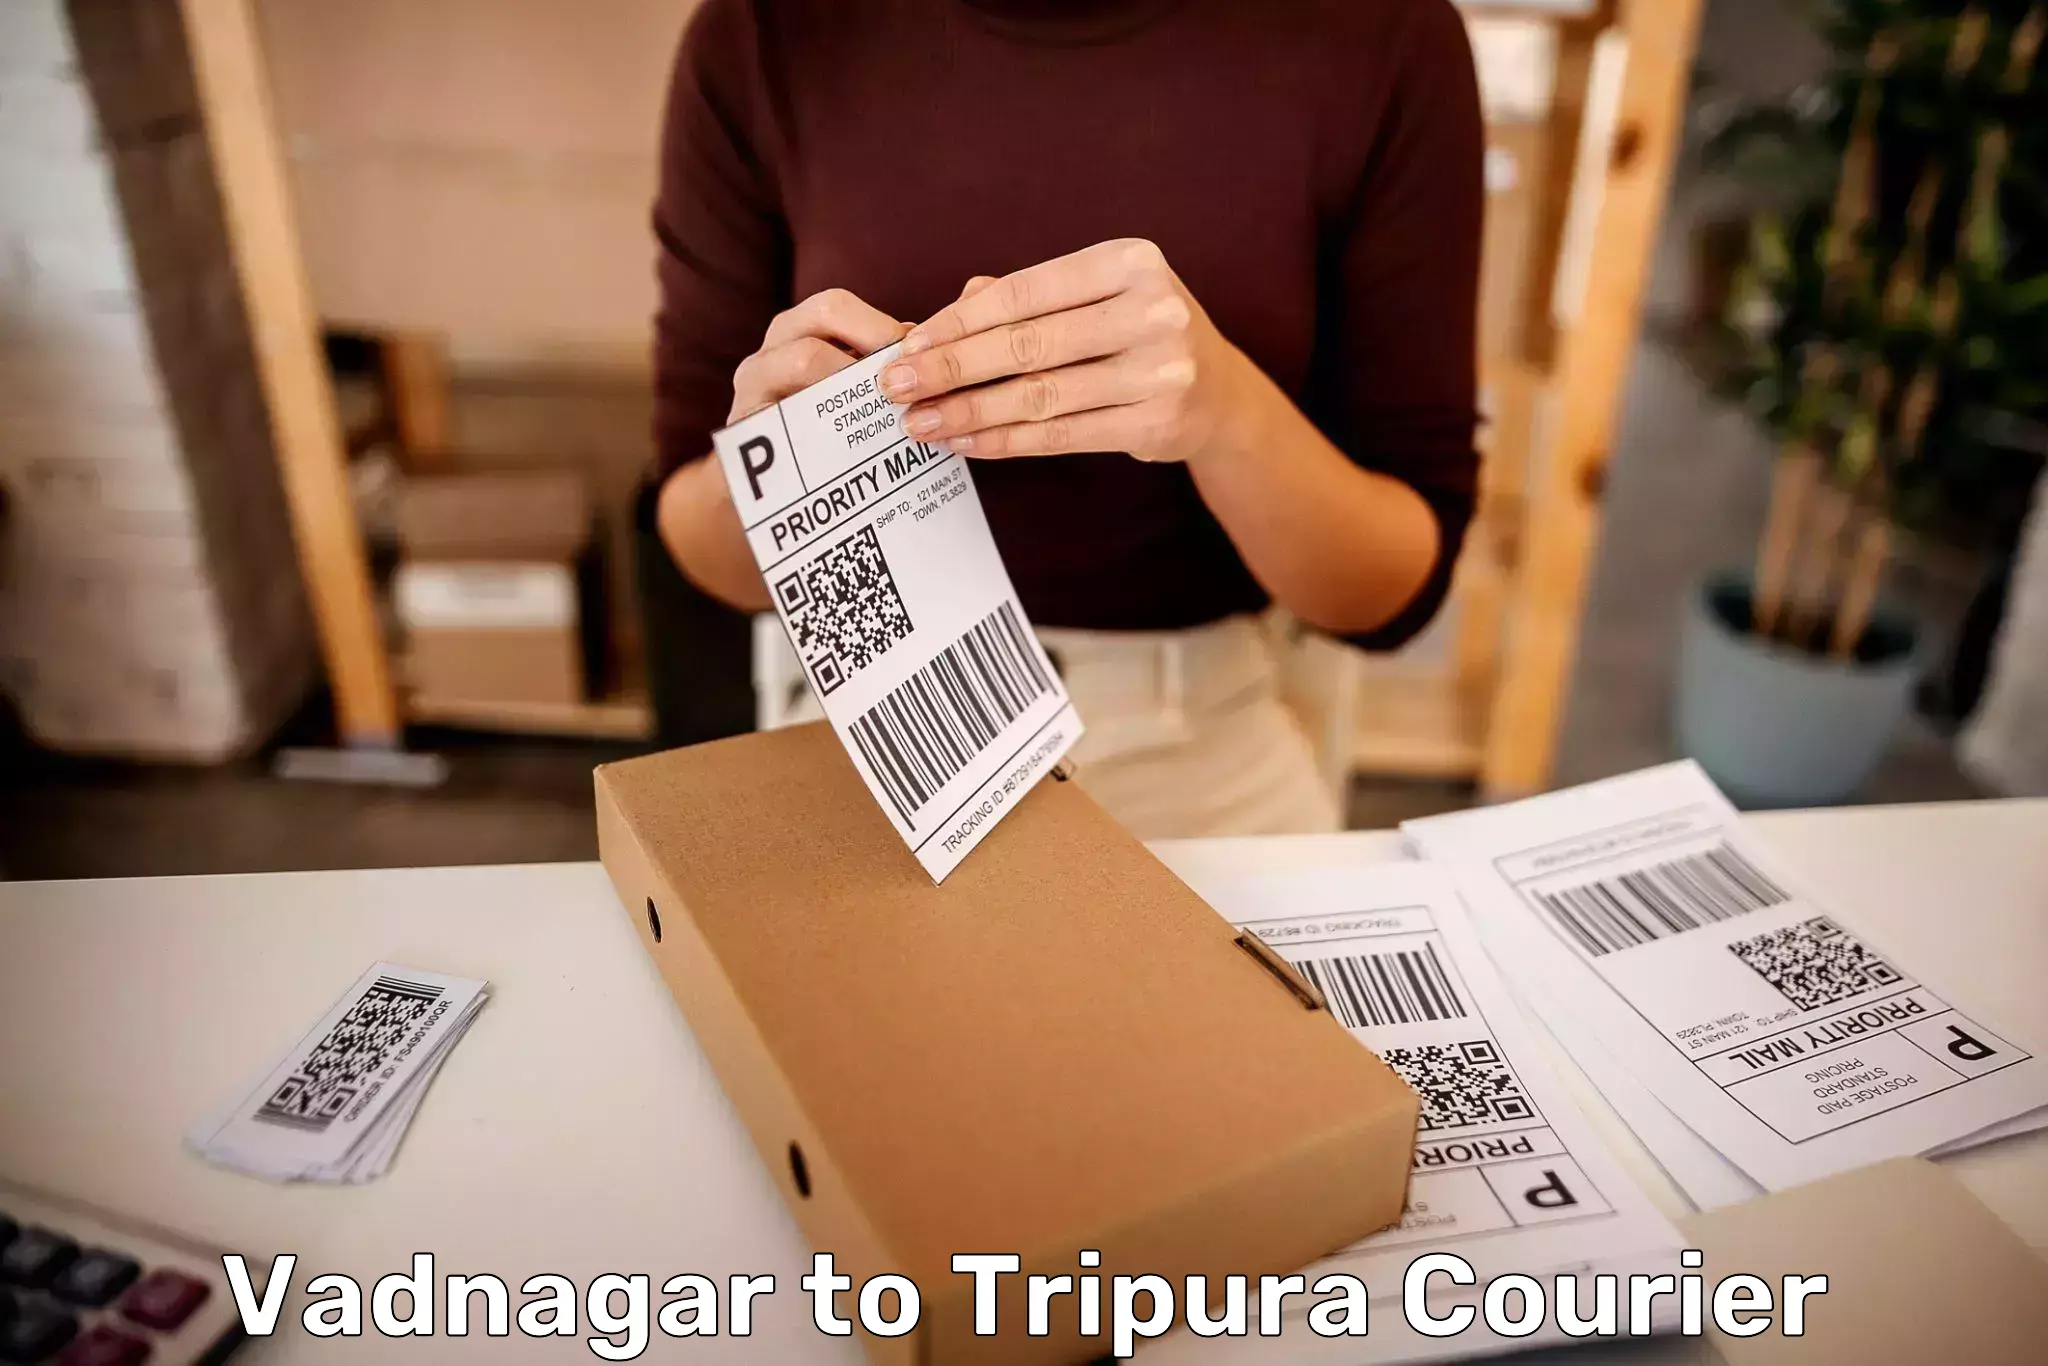 Baggage relocation service in Vadnagar to NIT Agartala